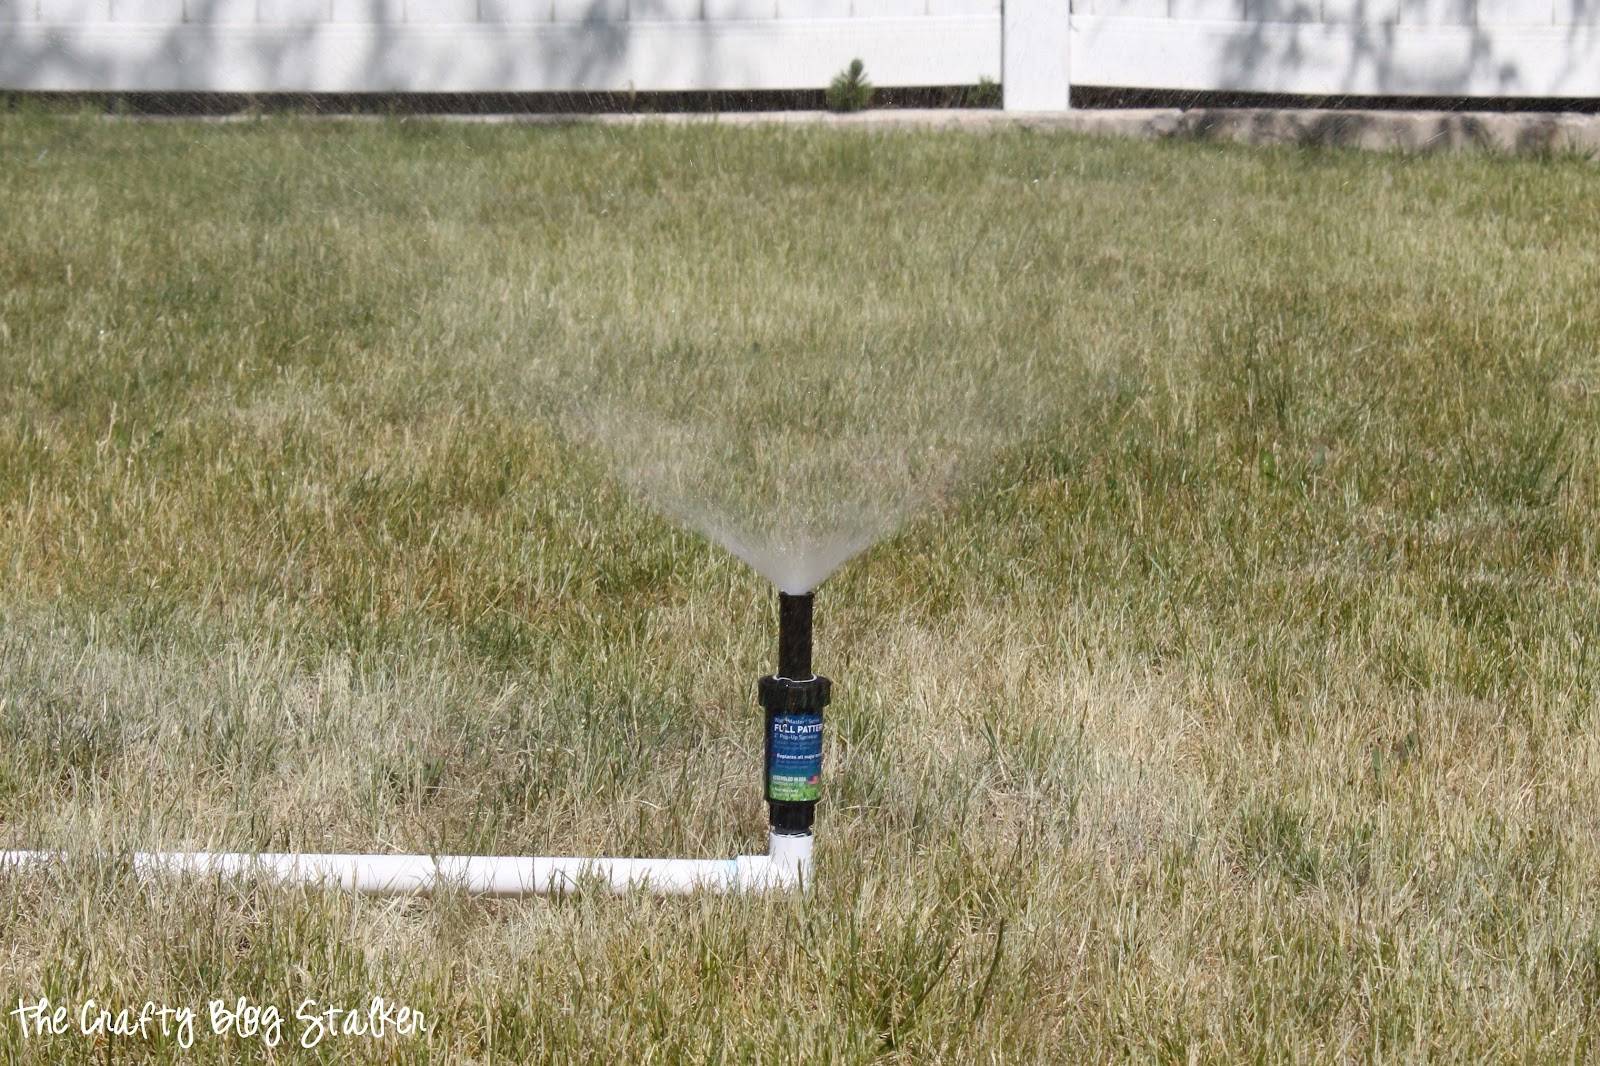 Best ideas about DIY Sprinkler System
. Save or Pin Simple DIY PVC Sprinkler The Crafty Blog Stalker Now.